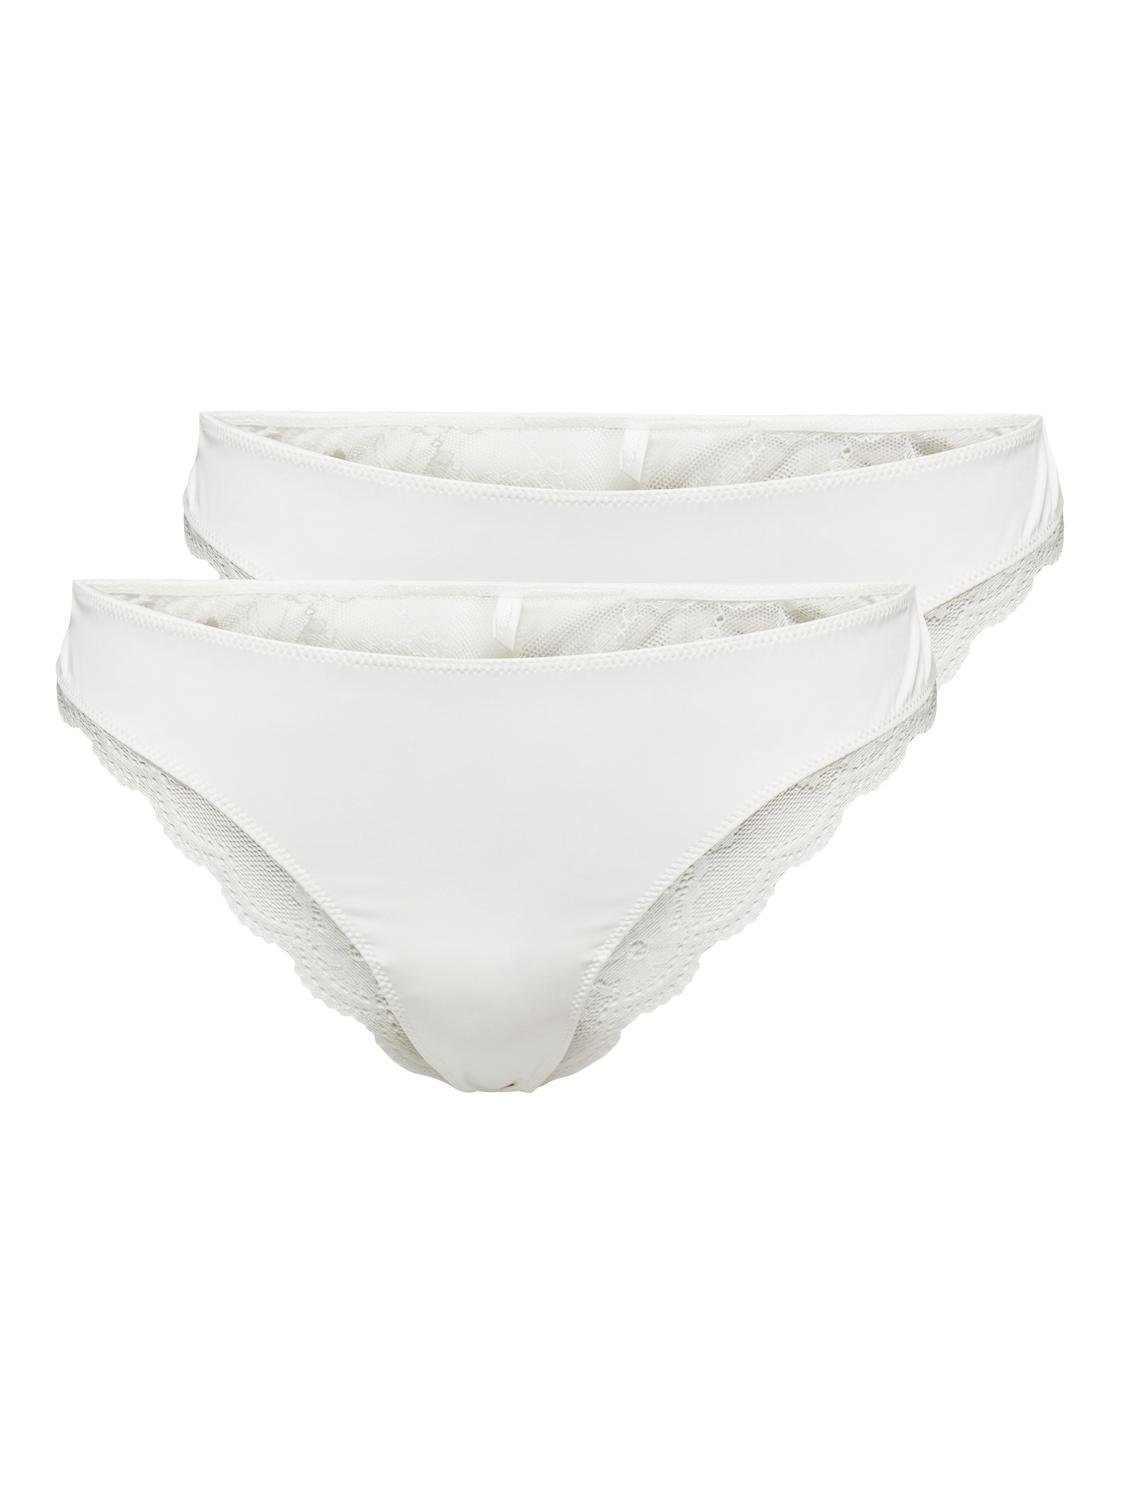 Women :: Lingerie :: Underwear :: Briefs :: Dawa White Panties - Urbankissed